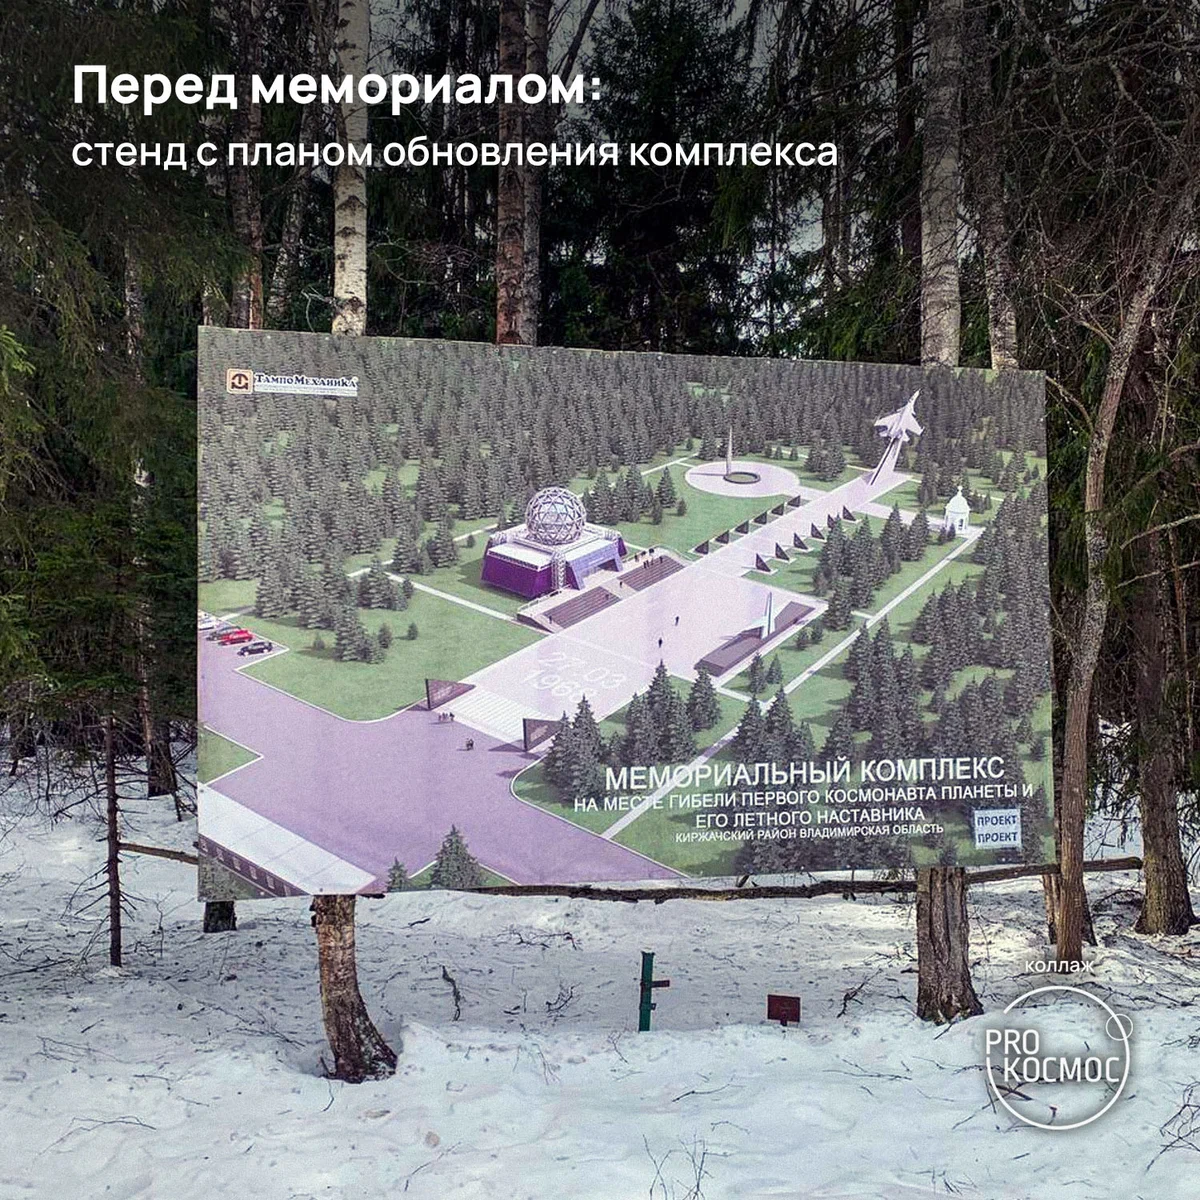 Мемориал на месте гибели Гагарина: 16-метровая стела в форме крыла самолета, выполненная из красного гранита⁠⁠ height=1200px width=1200px